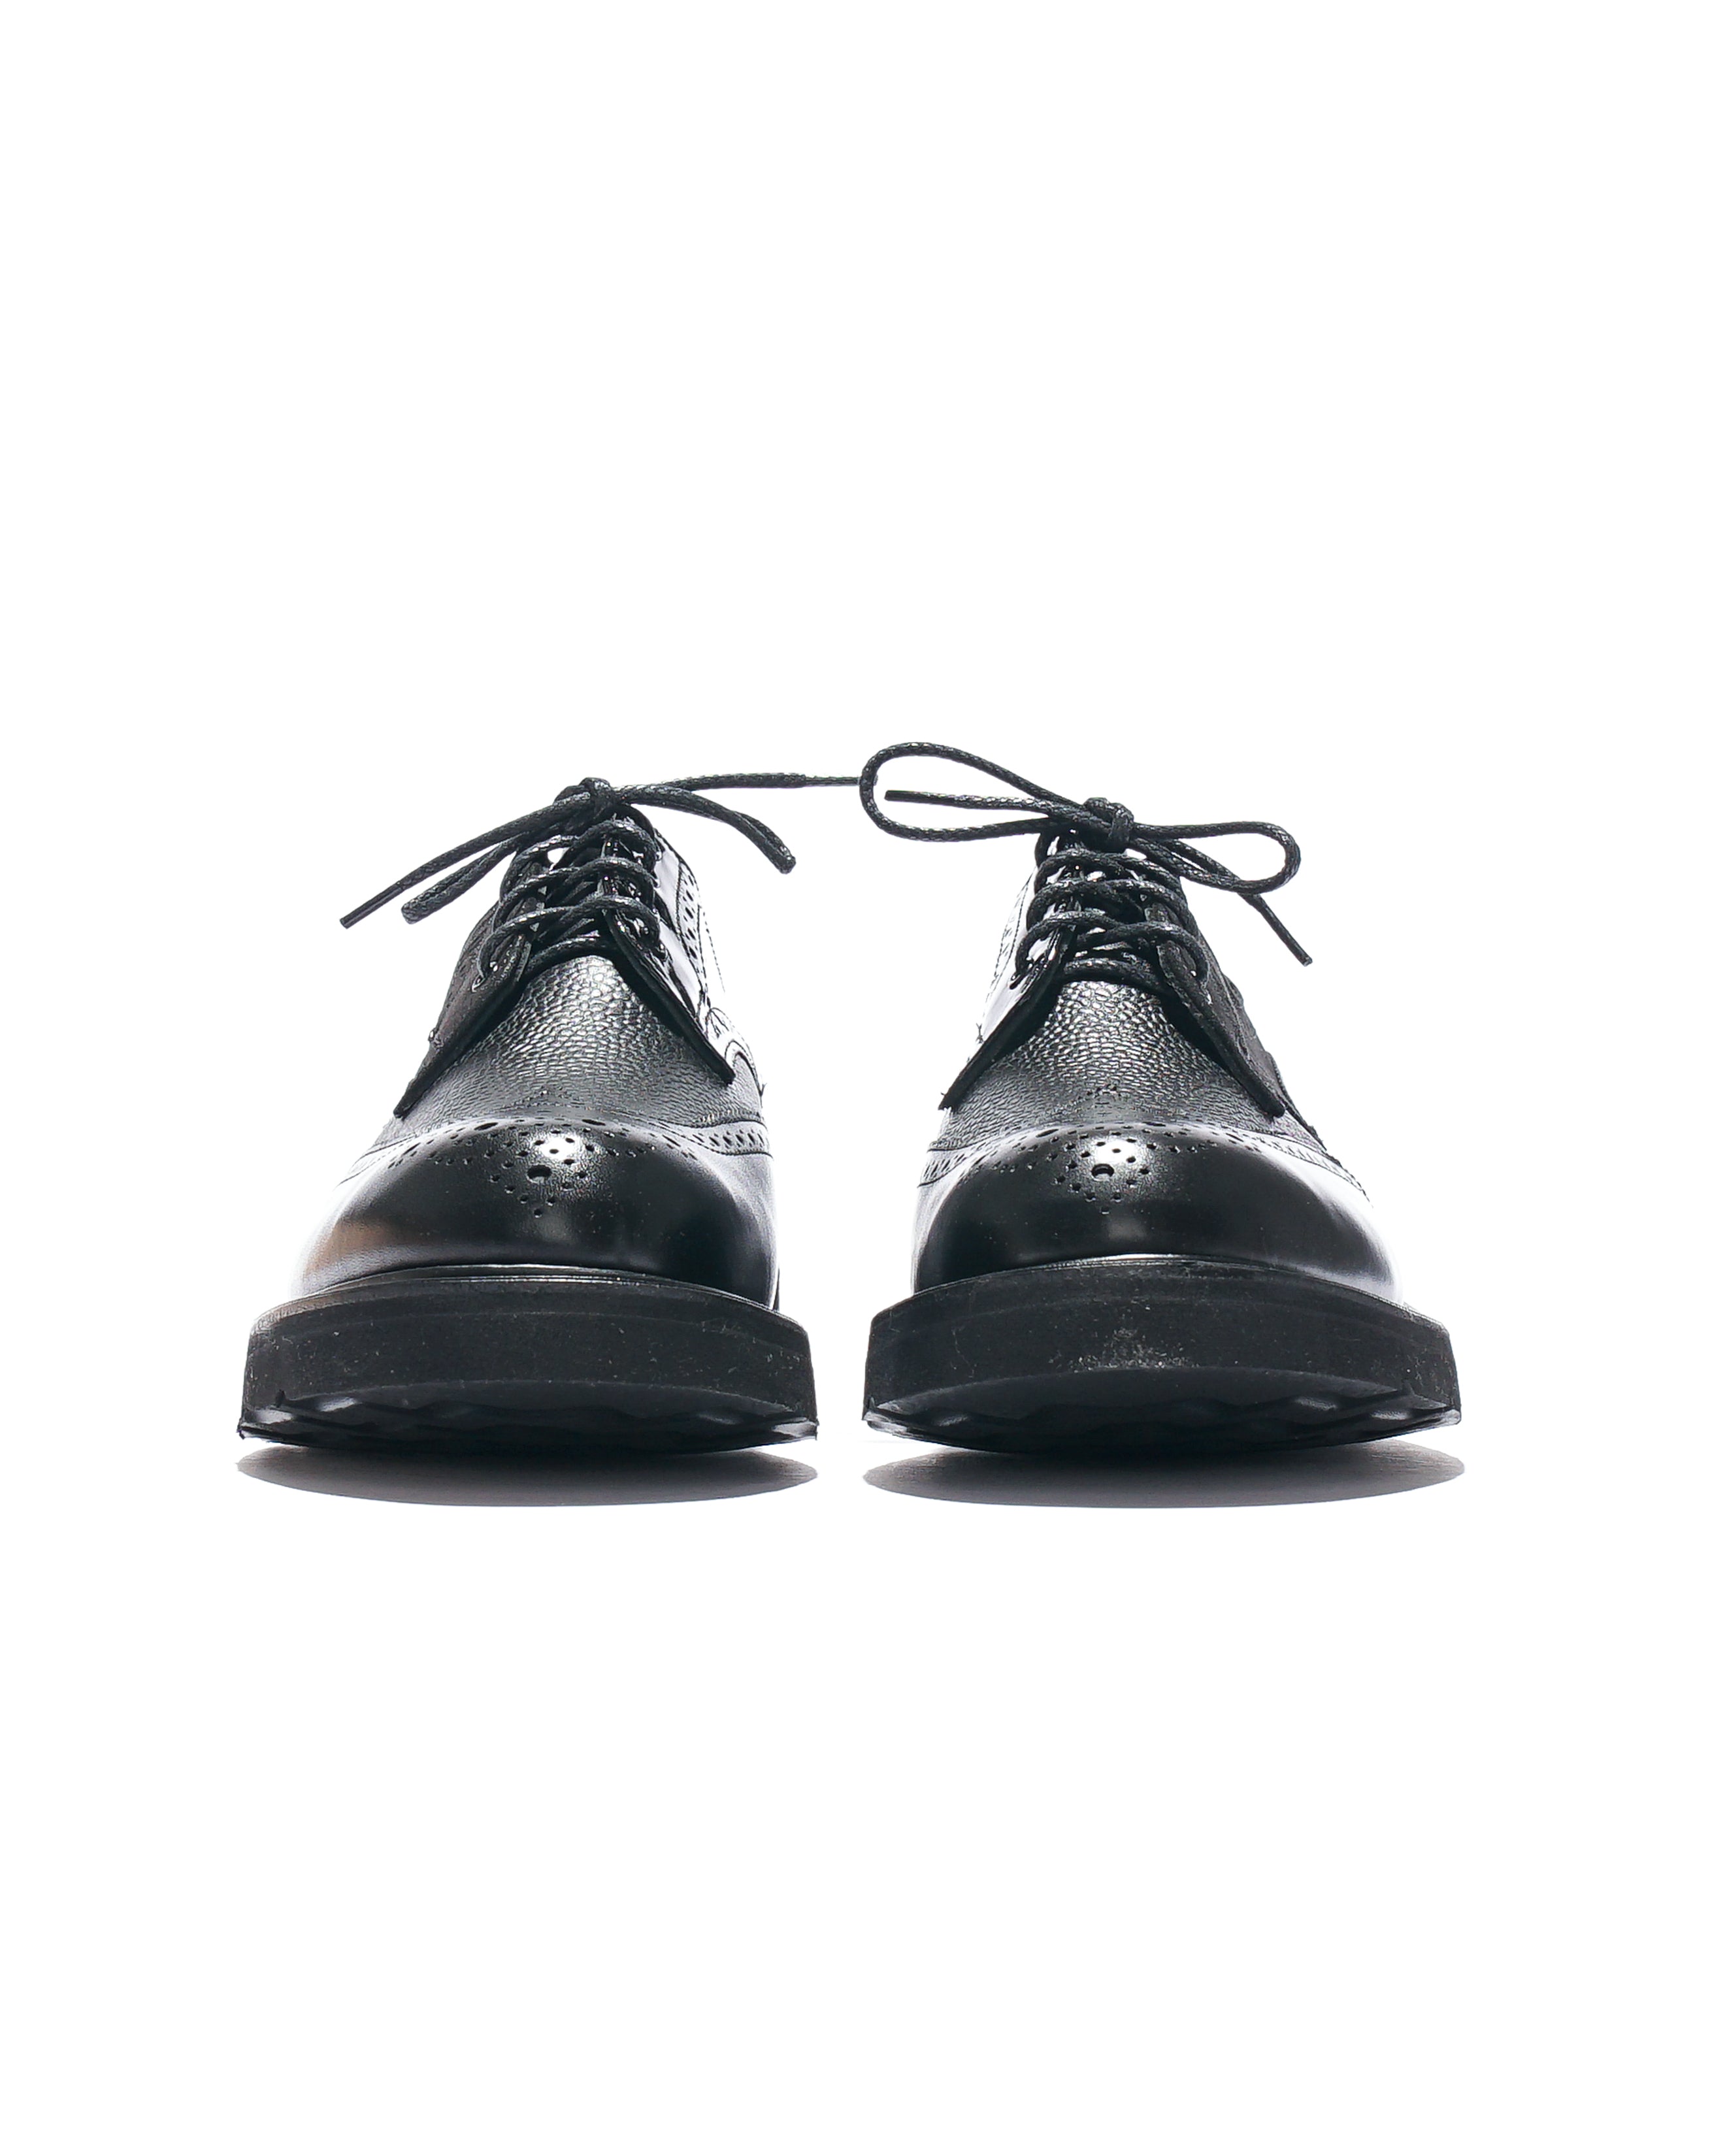 EG x Tricker's - Women's Brogue Shoe - Black - Multi Tone - Morflex Sole